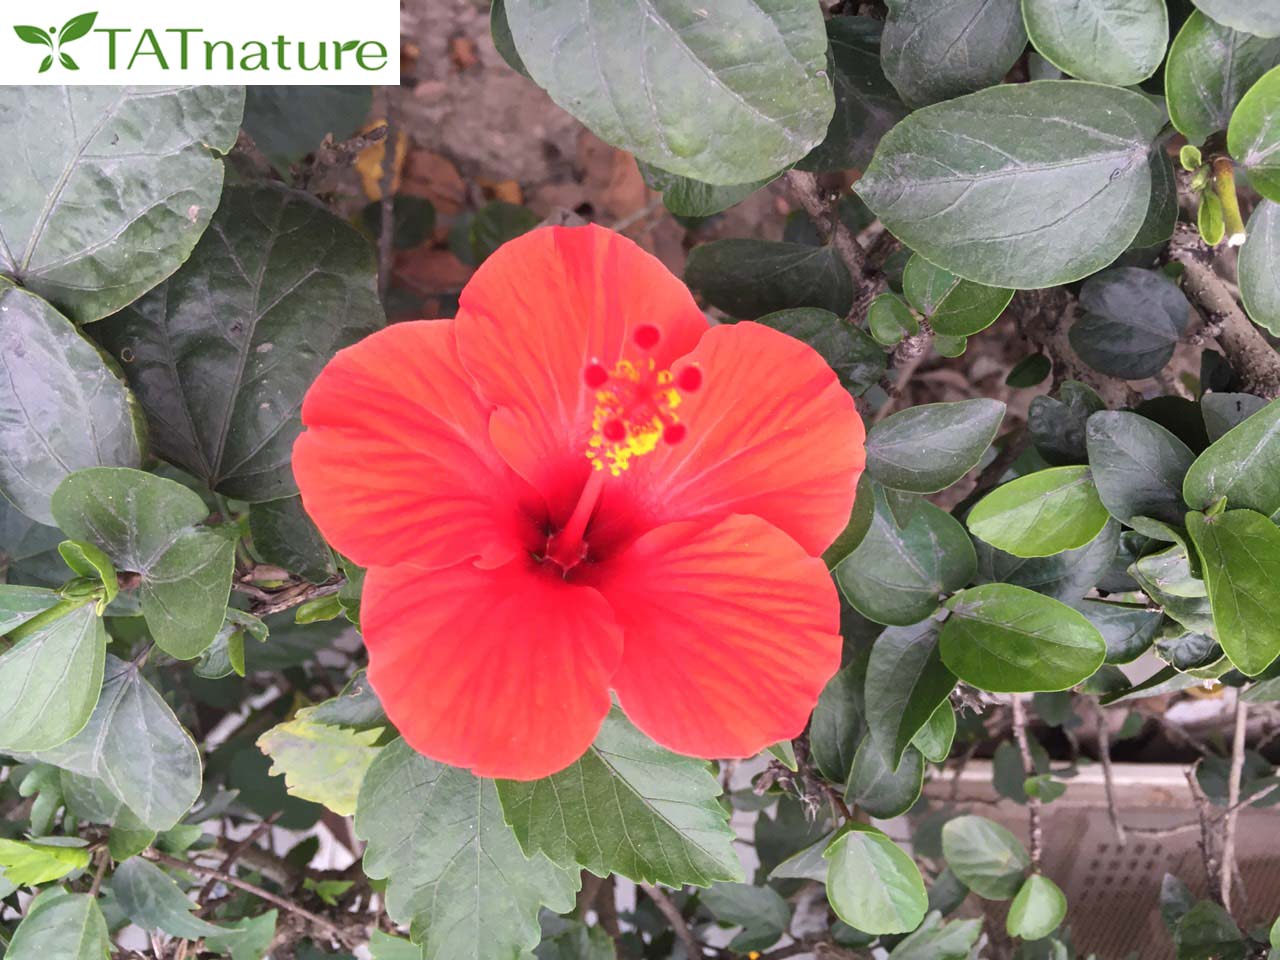 Tại Việt Nam, dù cây dâm bụt mọc nhiều nơi và được ưa chuộng để làm cây trang trí, thì bản thân loài hoa này không gắn với ý nghĩa đẹp.